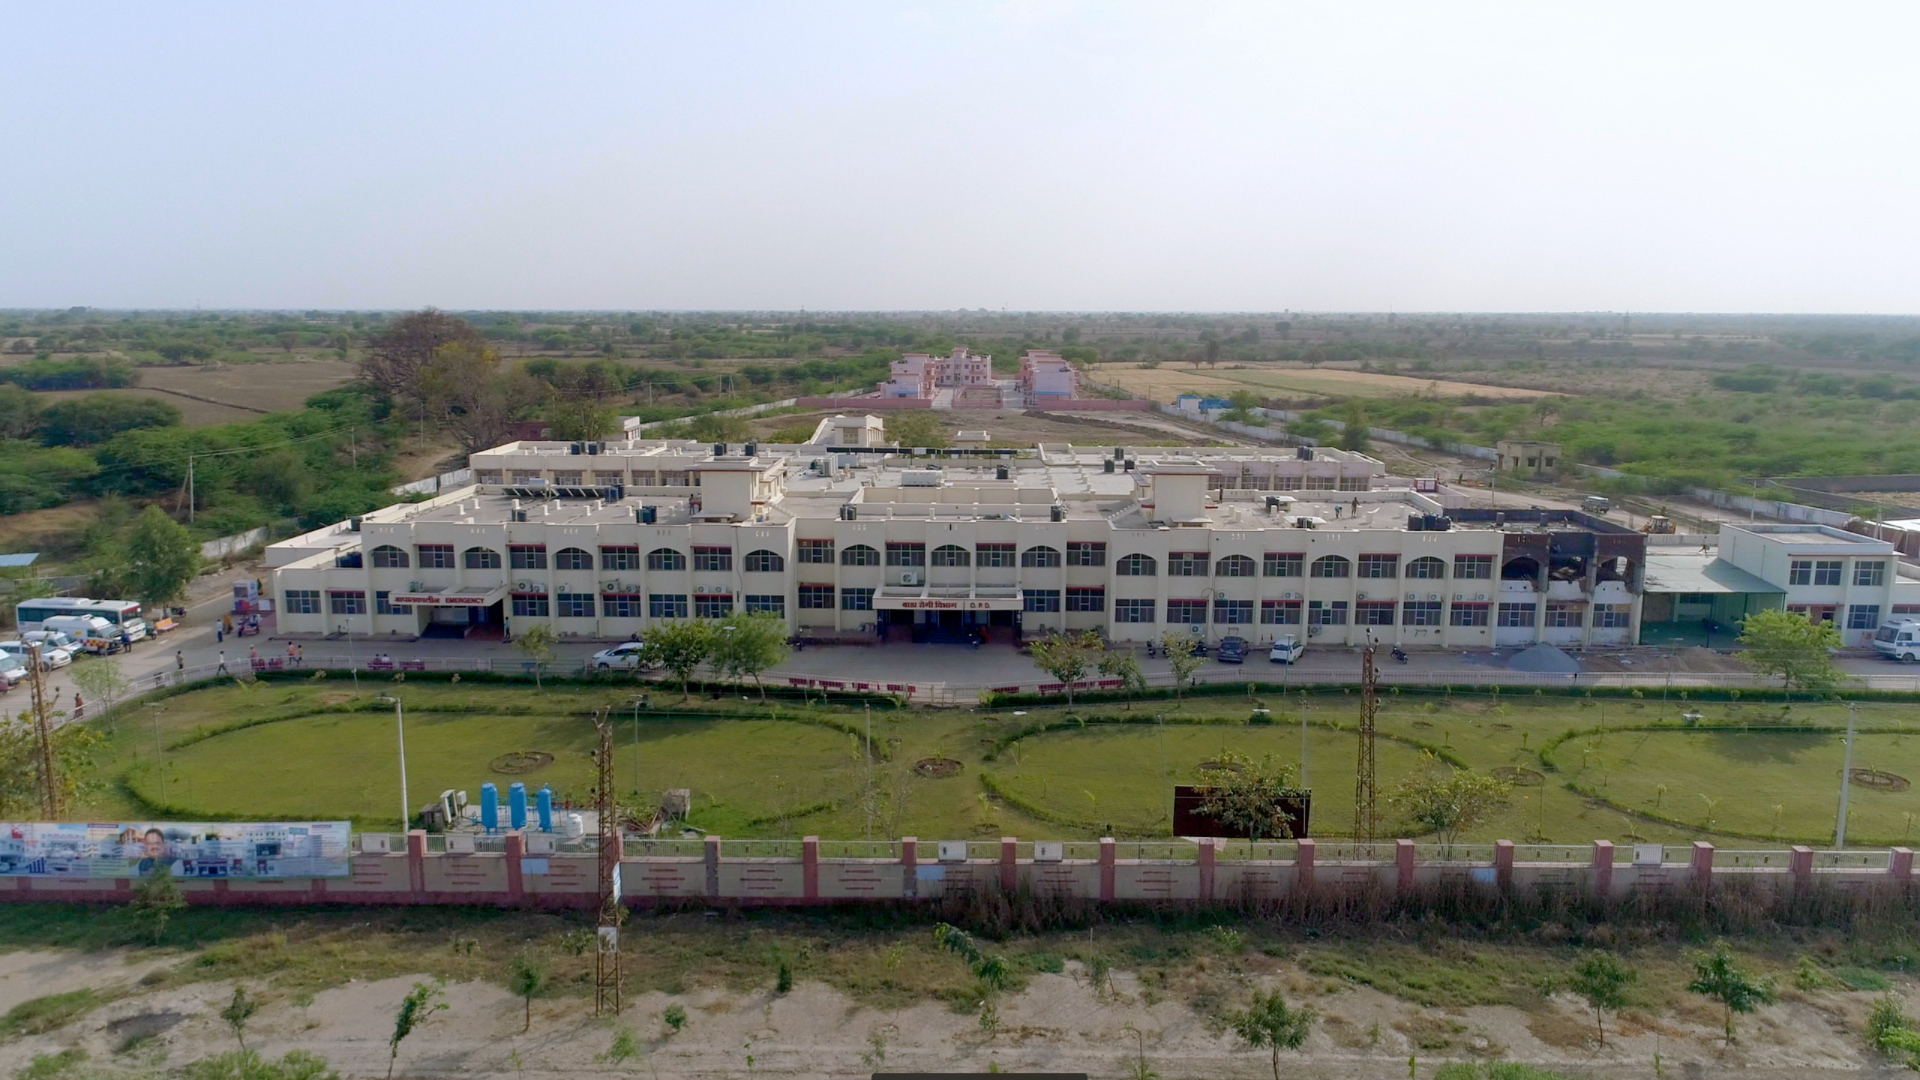 A hospital in Kekri, Rajasthan